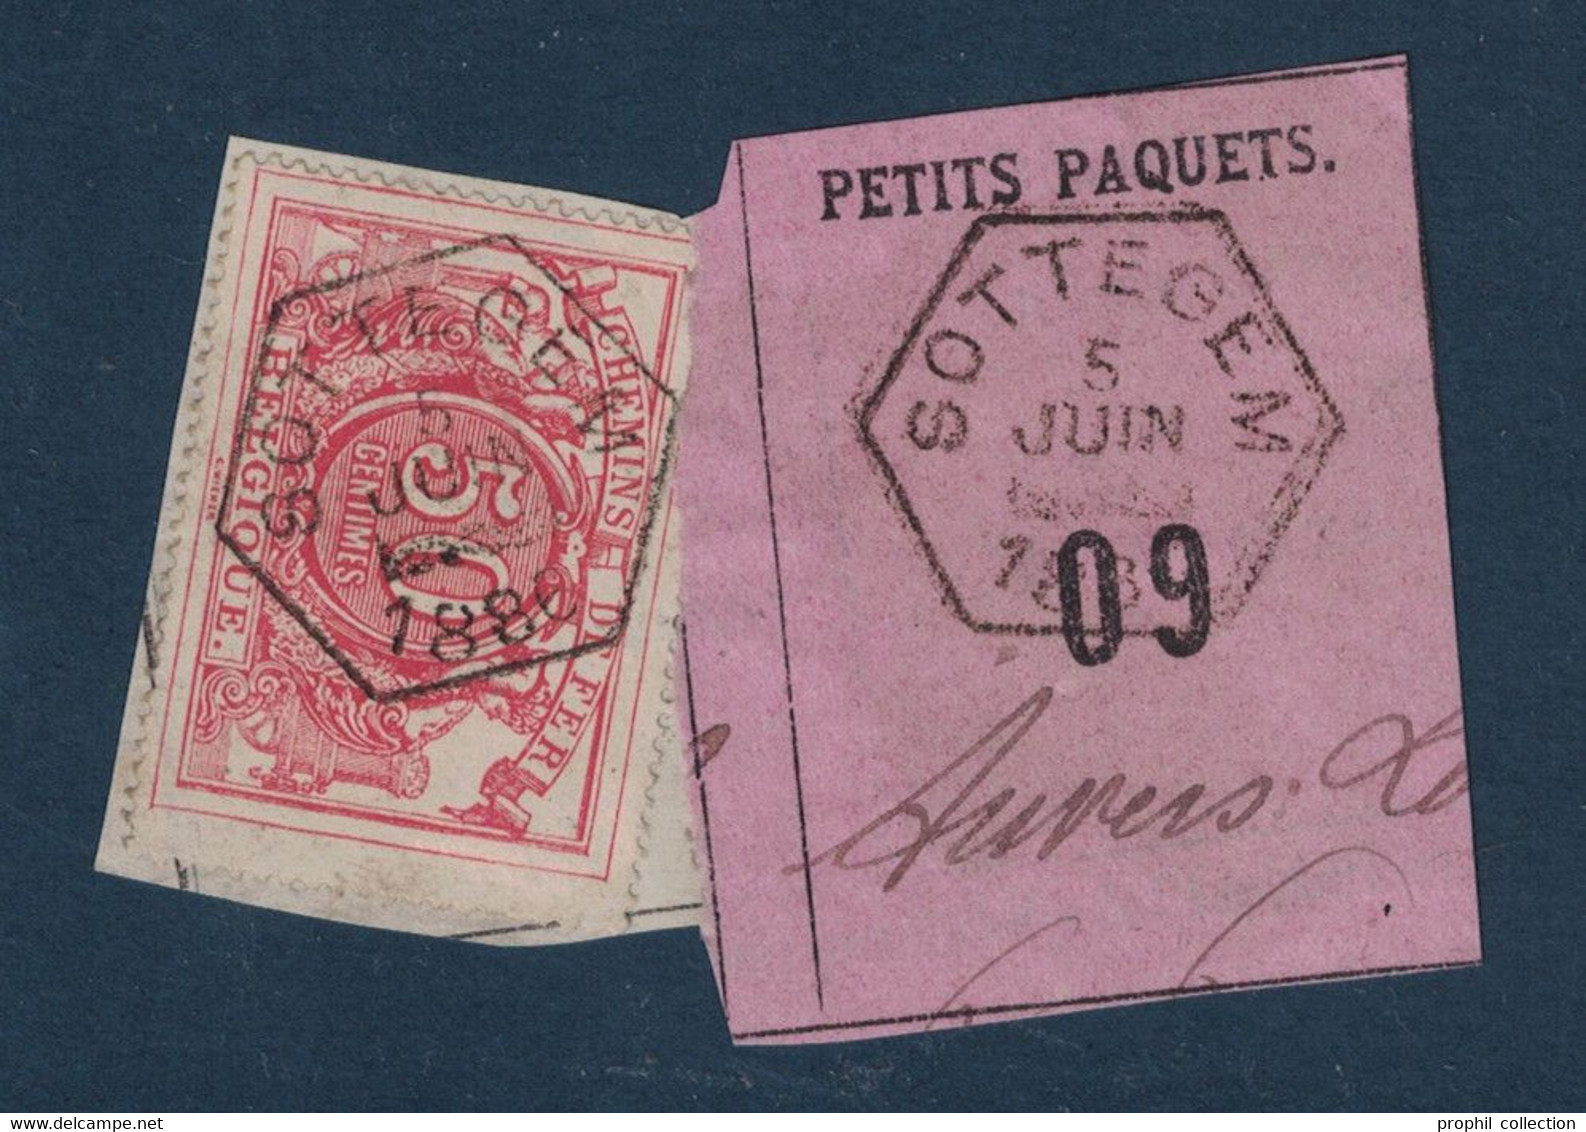 FRAGMENT Avec ETIQUETTE PETITS PAQUETS TIMBRE CHEMINS DE FER CACHET PERUWELZ 1889 - Dokumente & Fragmente